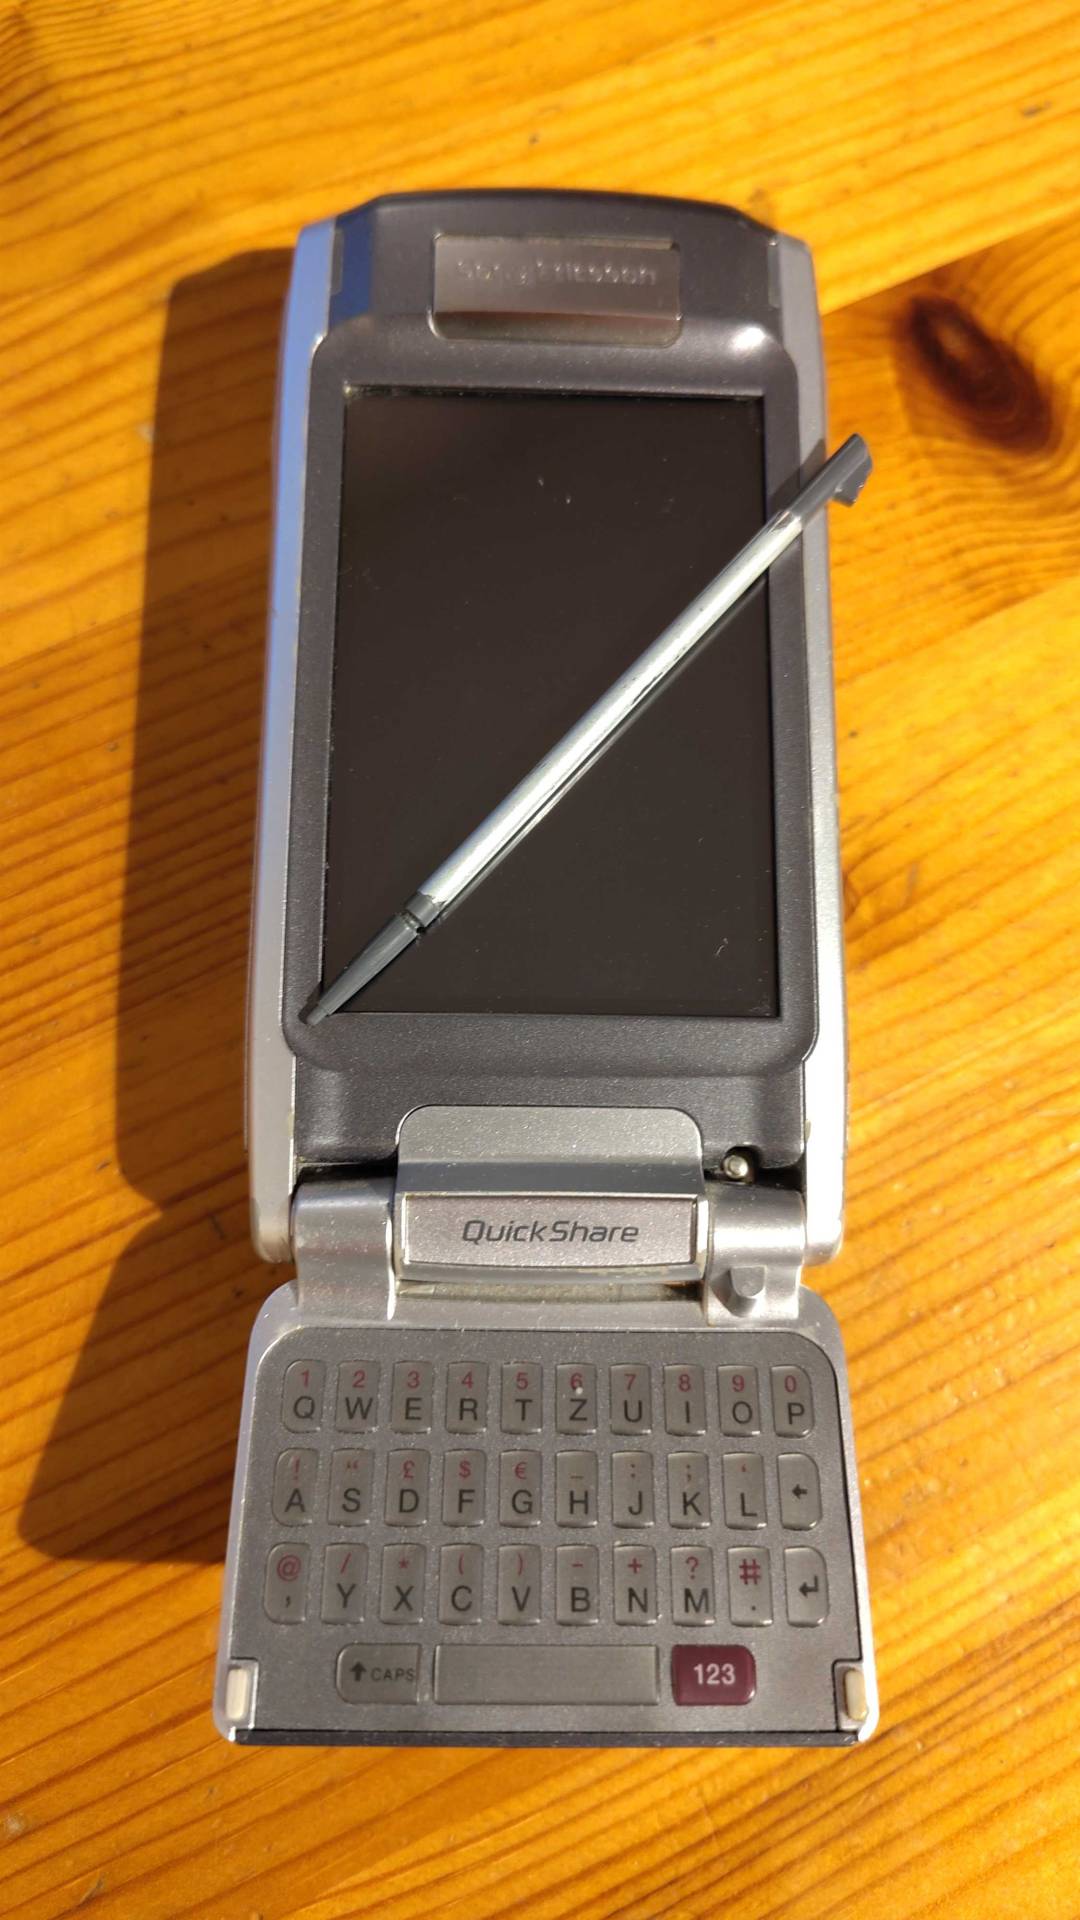 Ein Soy Ericsson P910i mit ausgeklappter Tastatur und Stift für das Touchpad.